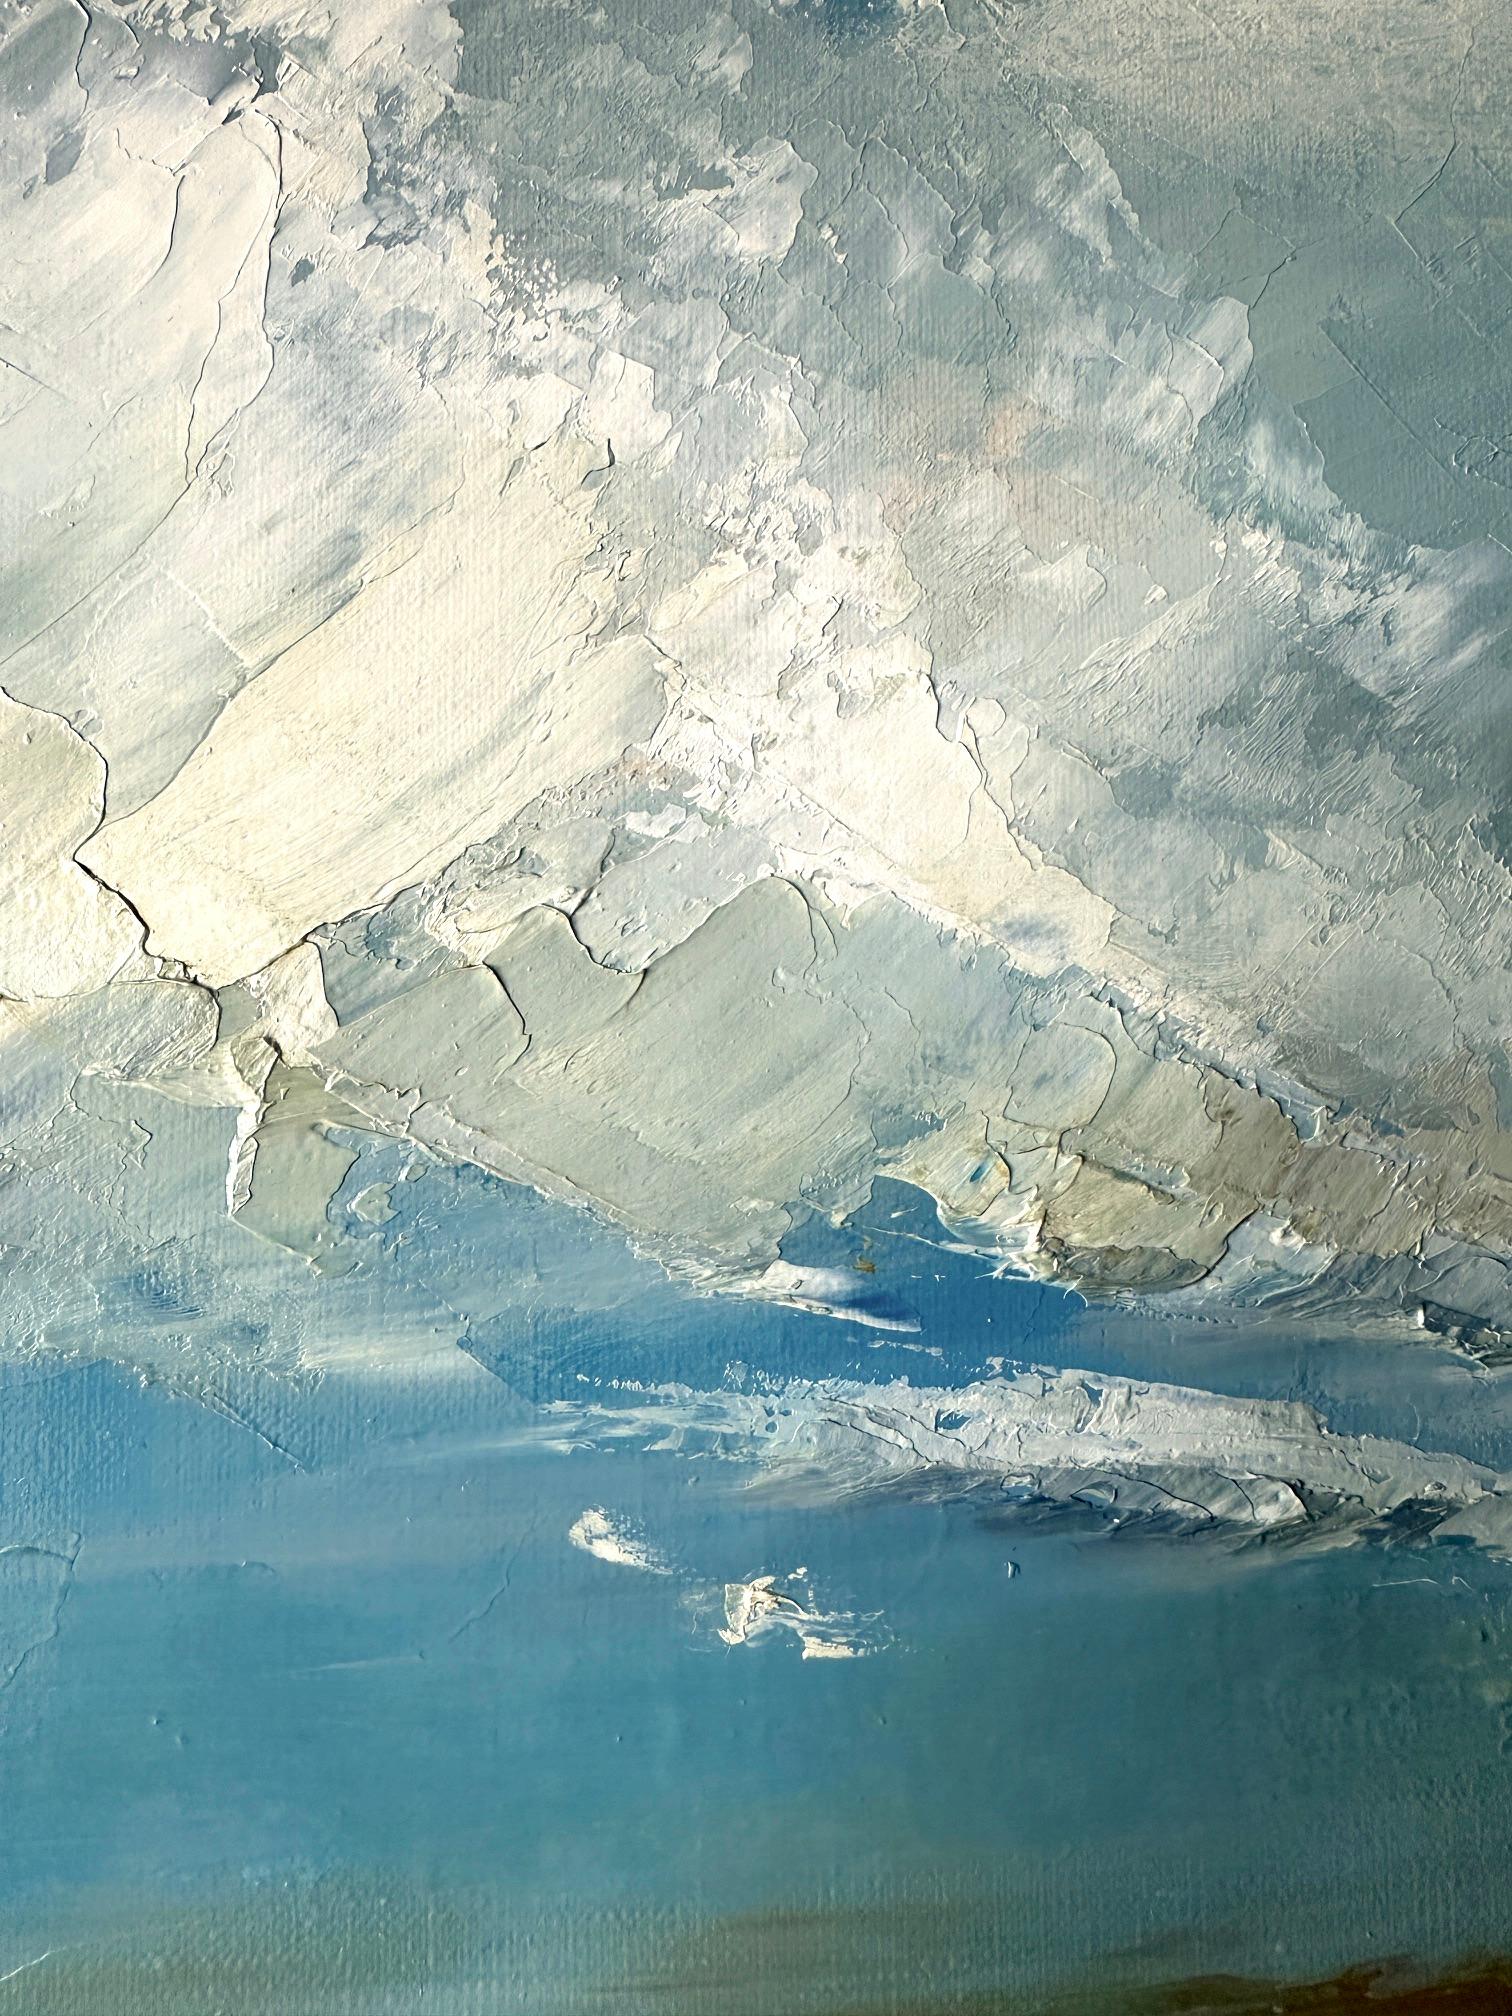 Dieses Gemälde ist von der Aussicht auf Rock von Padstow aus inspiriert. Es war ein windiger Tag mit großen, flauschigen Wolken am Himmel. Die Farben waren unglaublich schön, mit viel kräftigem Türkis und hellem Schimmer auf dem Wasser. Ein Tag, an